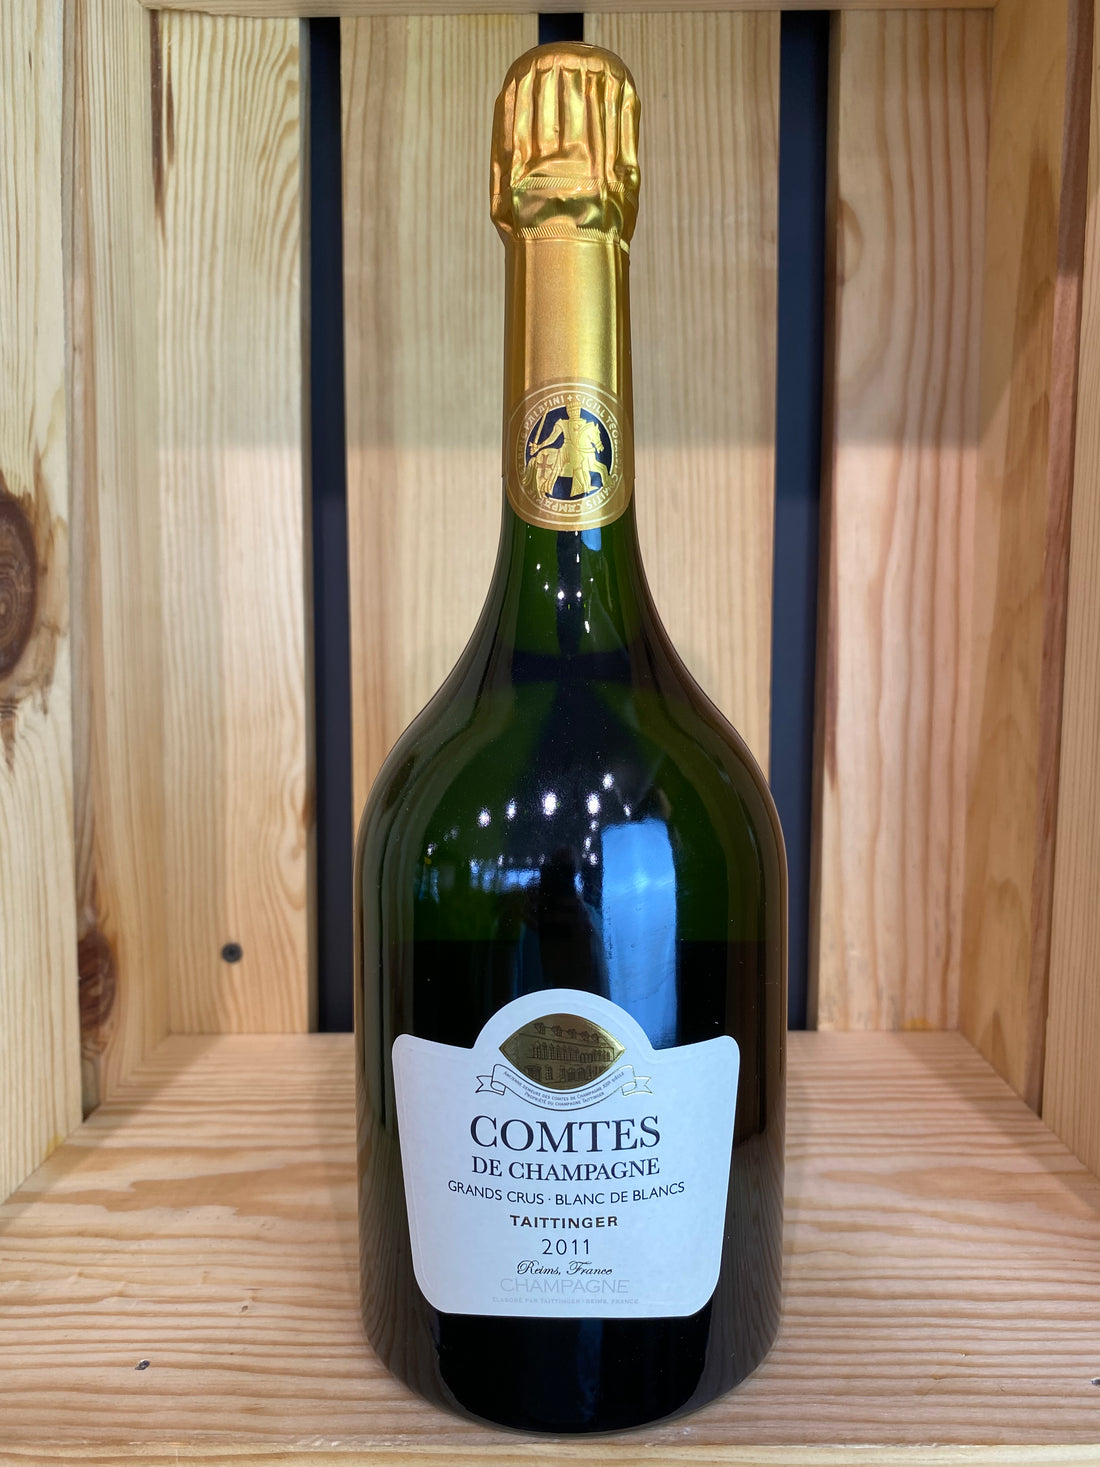 Taittinger Comtes de Champagne ‘11